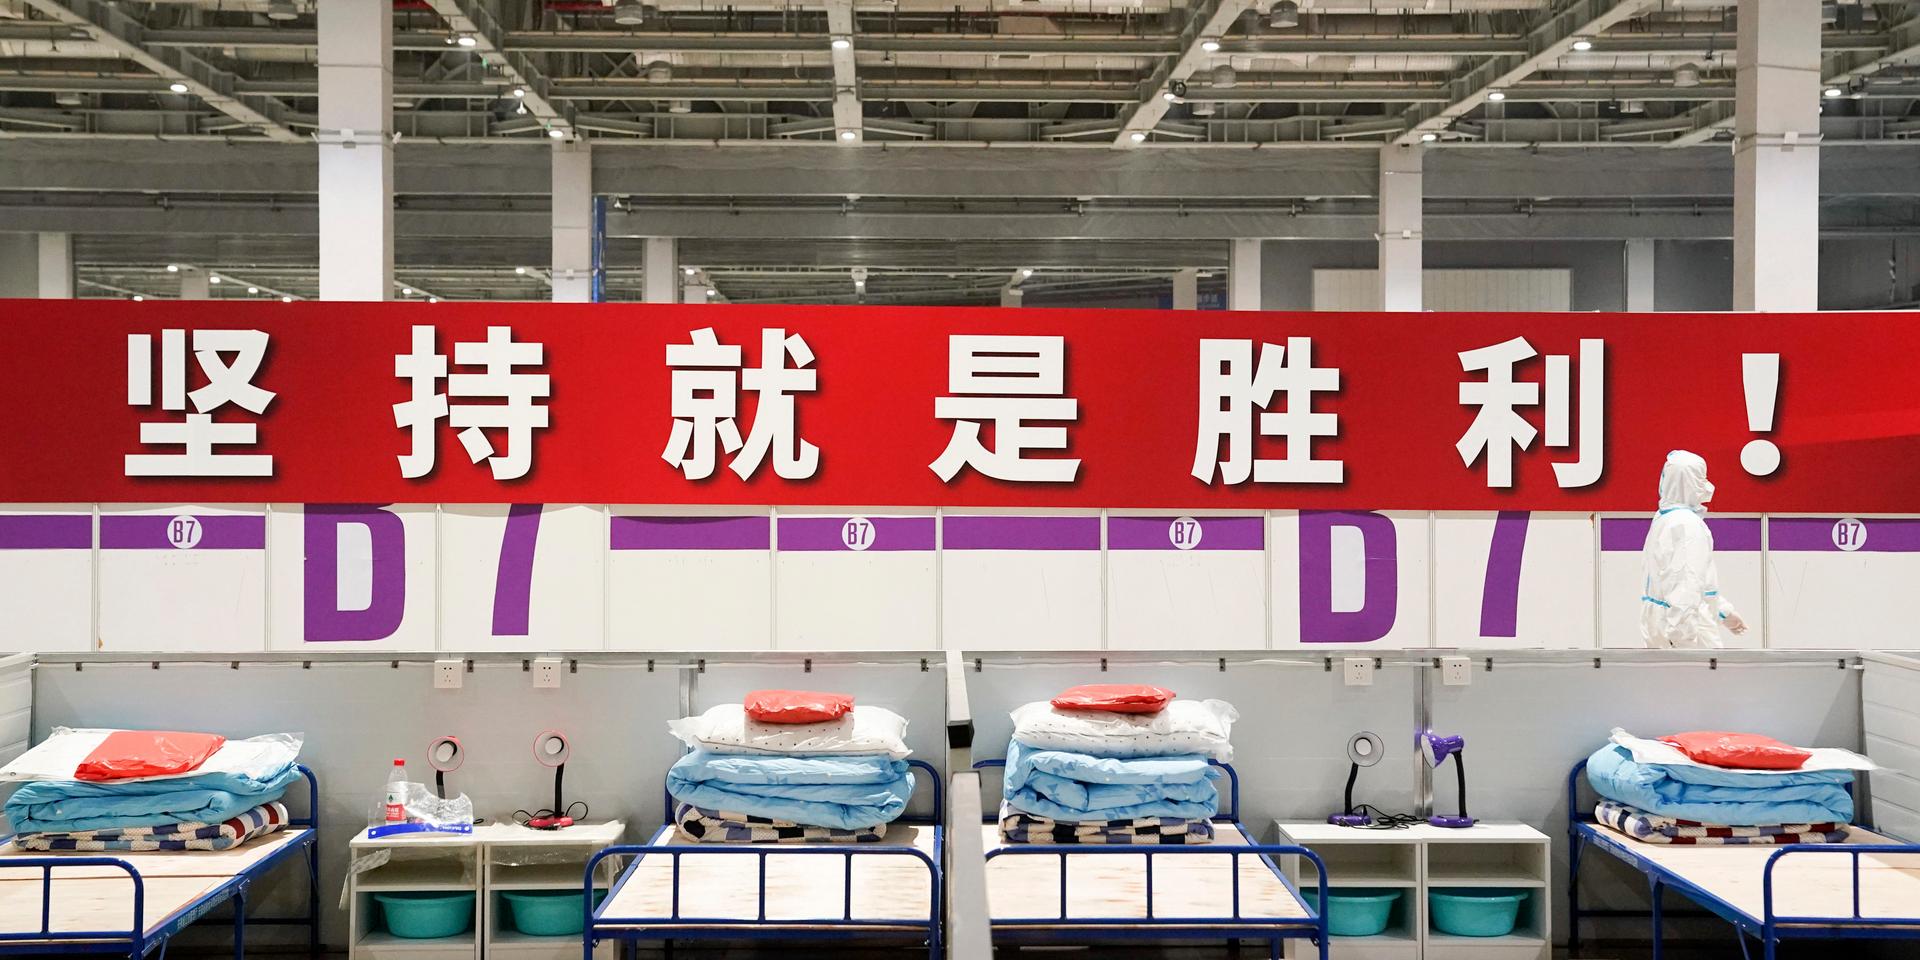 'Uthållighet innebär seger!' lyder en banderoll på på ett provisoriskt sjukhus och karantänsfacilitet i Shanghai, som har stängt ned för att stoppa smittan. Arkivbild.